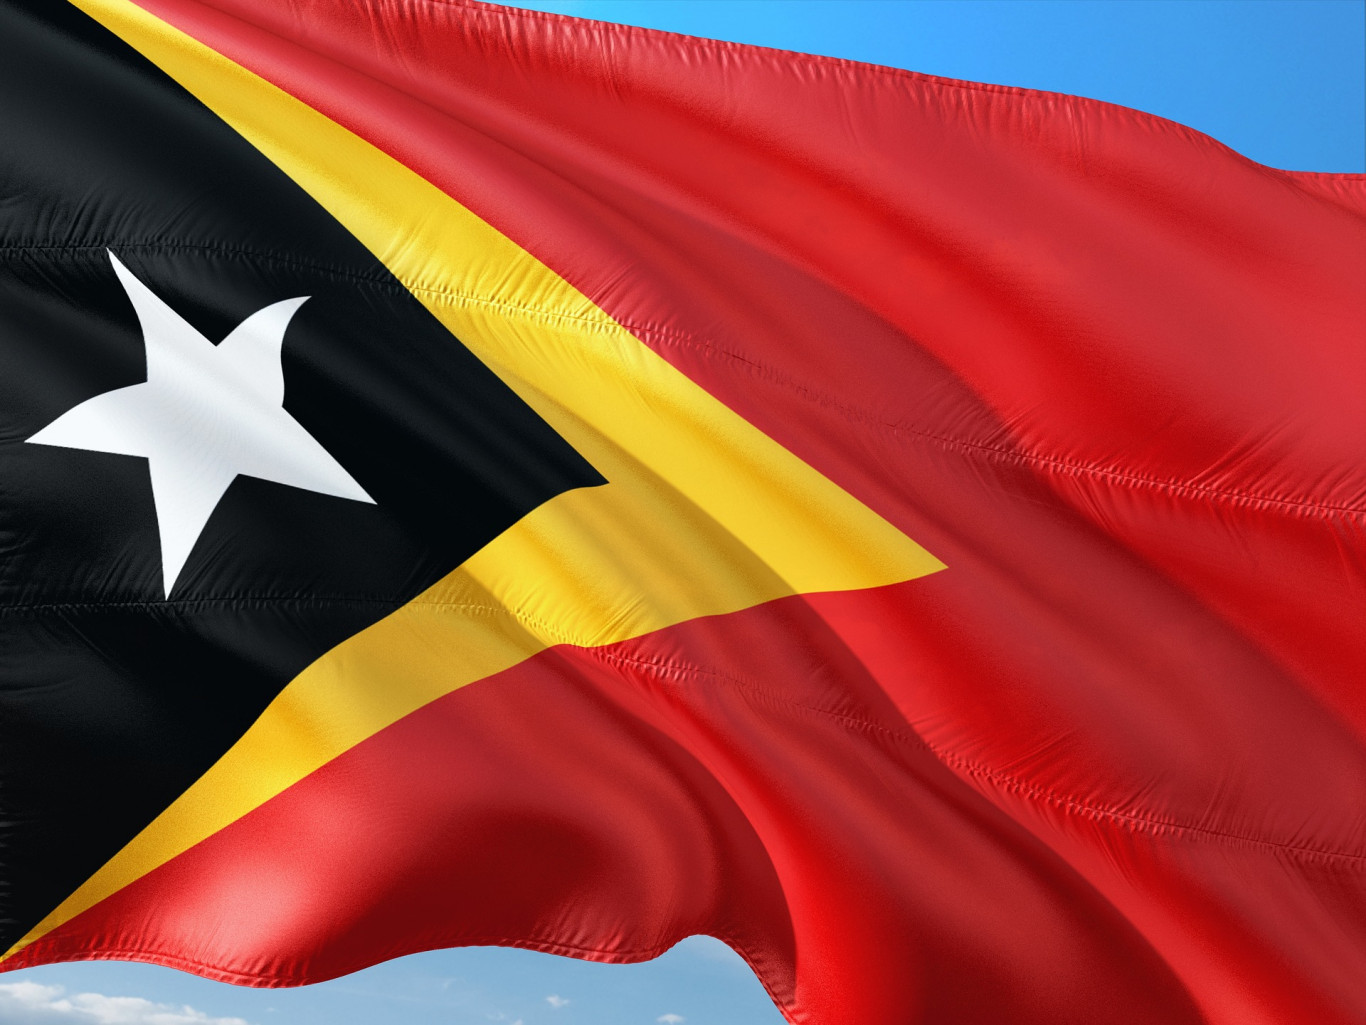 Quy trình đăng ký nhãn hiệu quốc tế tại Timor Leste, Quy trình đăng ký nhãn hiệu quốc tế tại East Timor, Quy trình đăng ký nhãn hiệu tại Timor Leste, quy trình đăng ký thương hiệu tại Timor Leste, quy trình bảo hộ thương hiệu tại Timor Leste